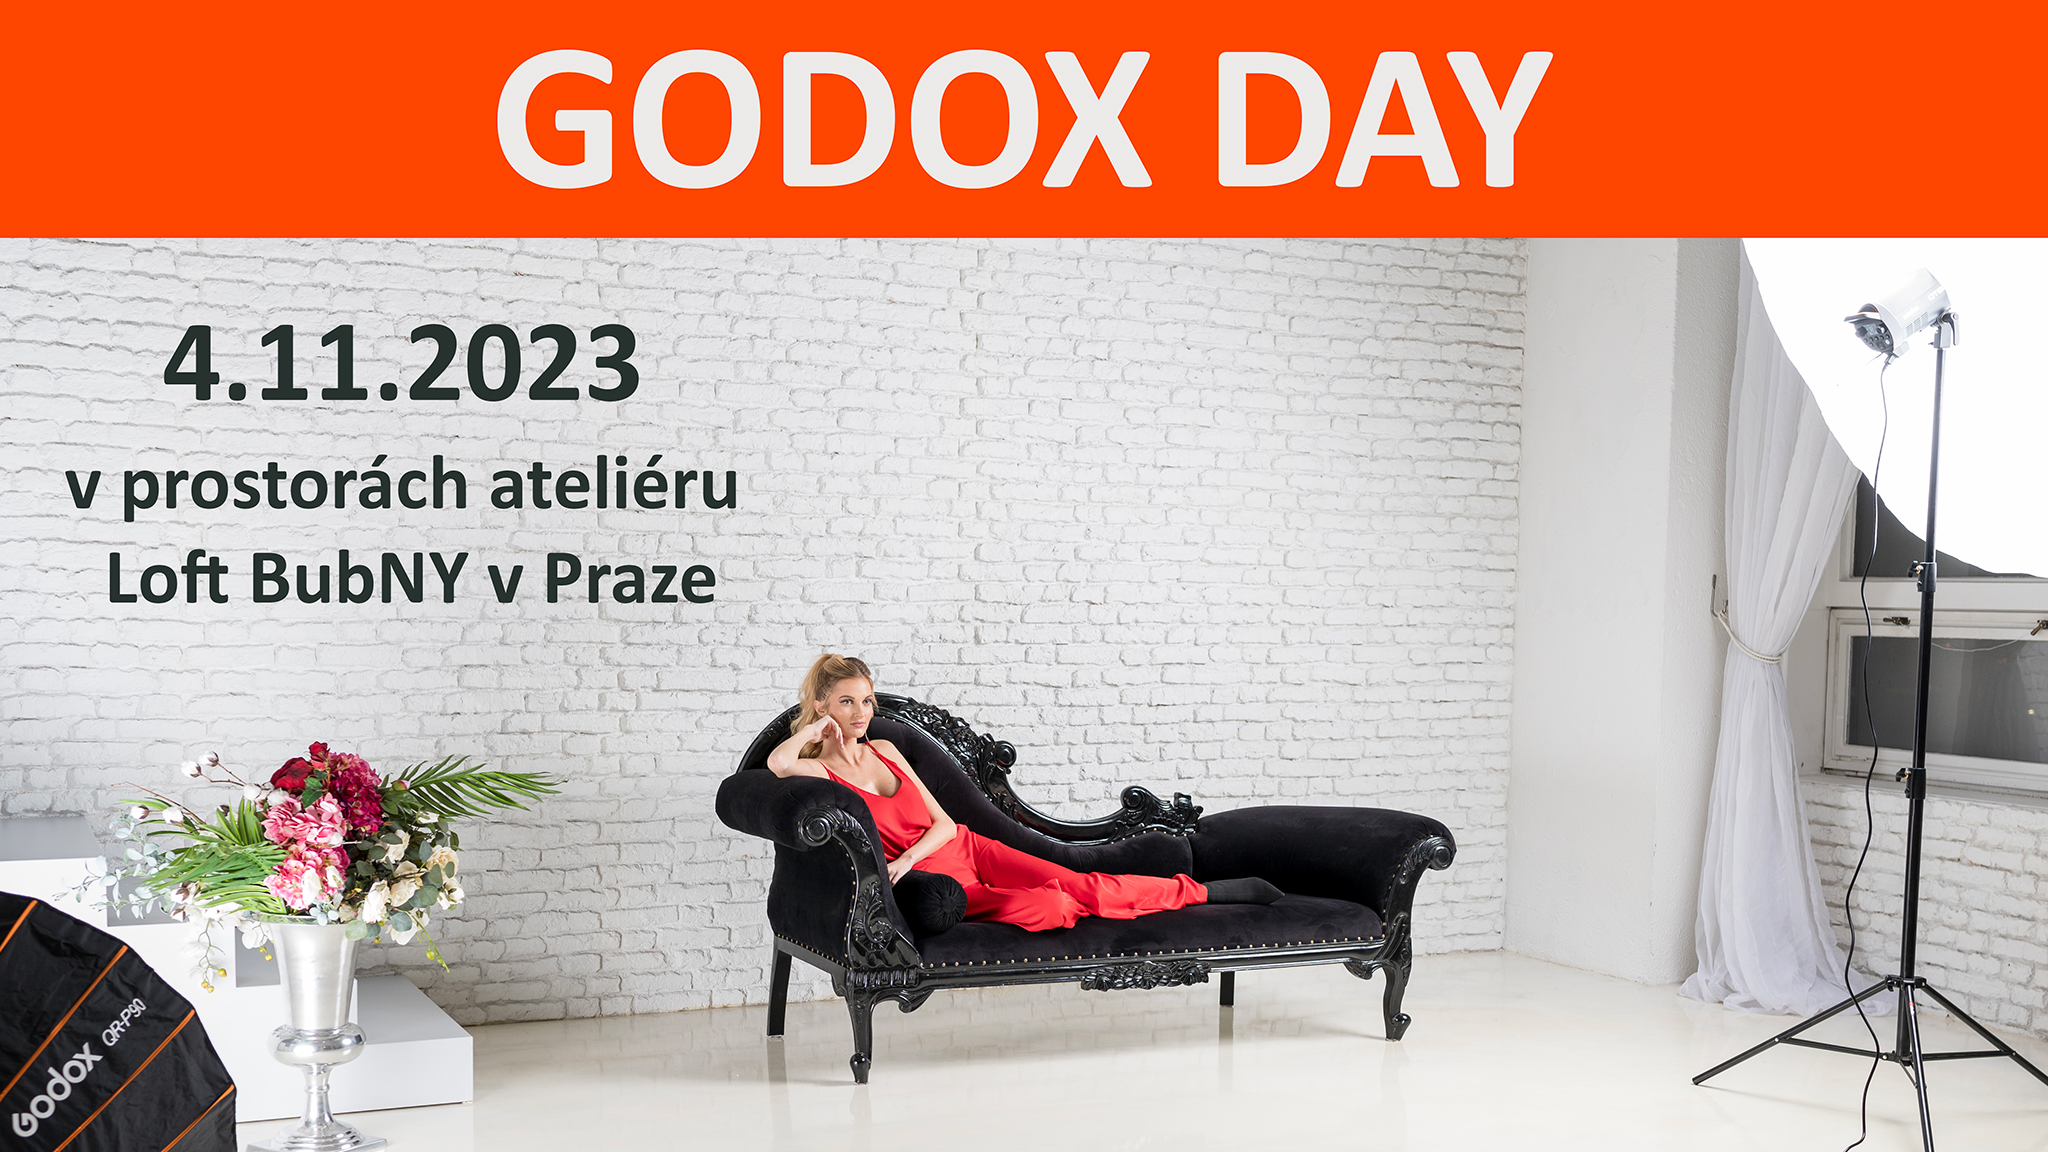 Godox Day 2023